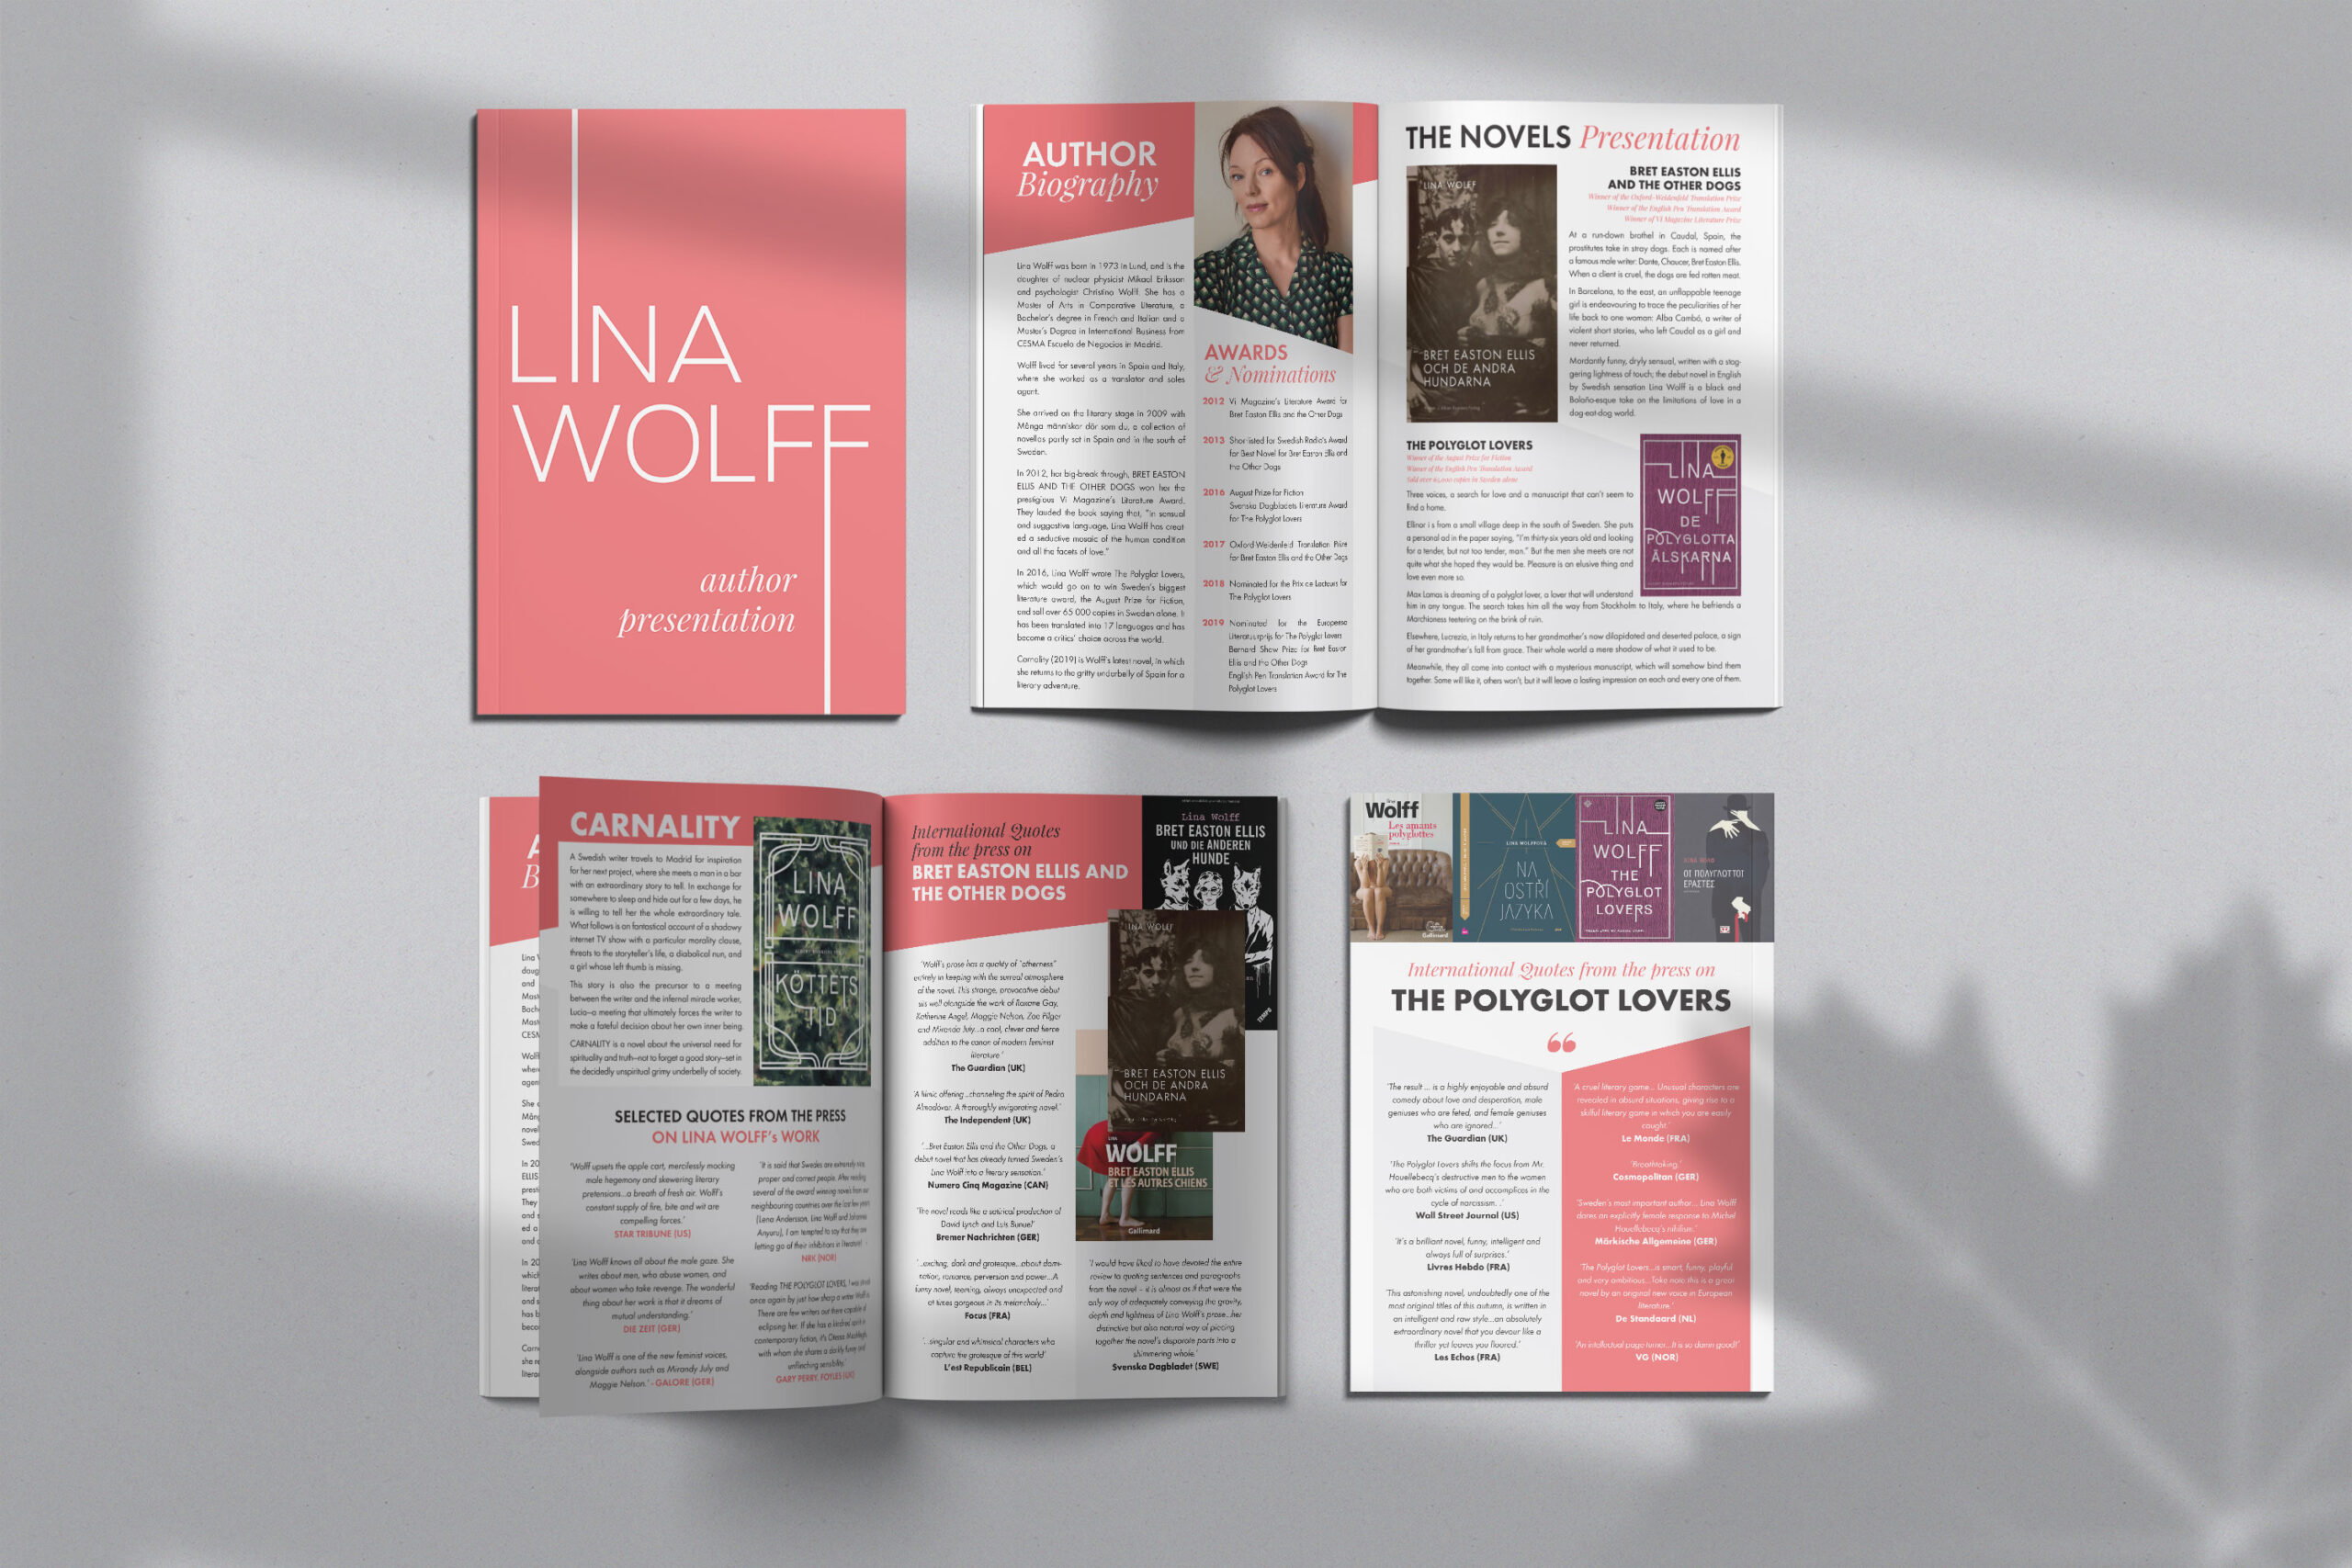 design-prezentare-autor-lina-wolff-bonnier-rights